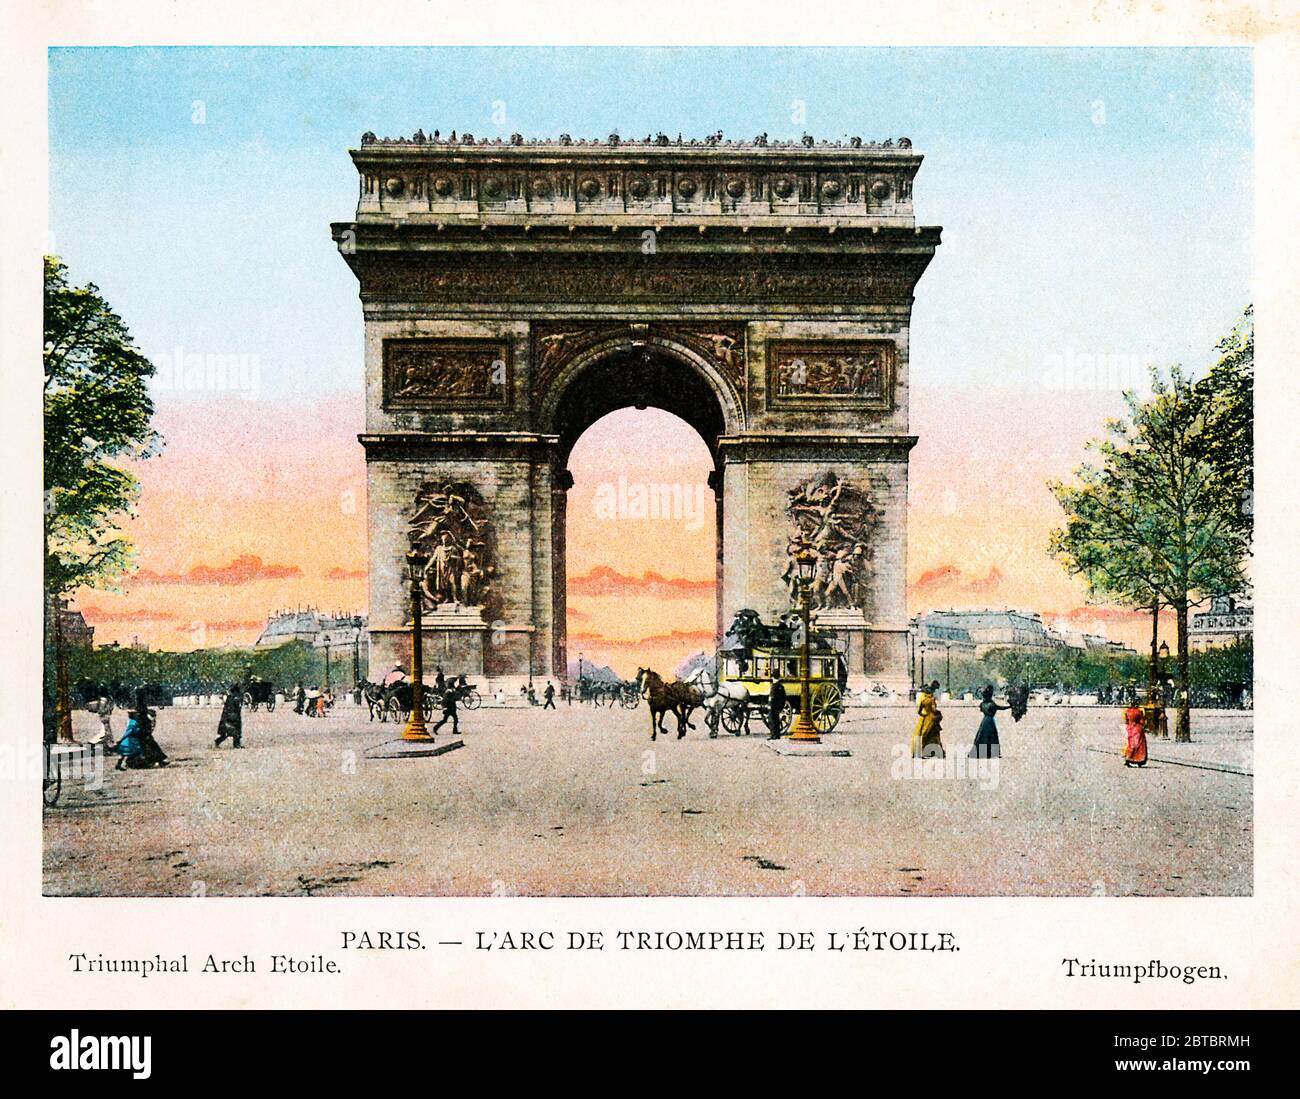 Arc de Triomphe de L'Étoile, Paris 1900 Farbfoto des berühmten französischen Denkmals für die revolutionäre und Napoleonische Kriege, das von Bonaparte 1806 begonnen und 1836 fertiggestellt wurde Stockfoto